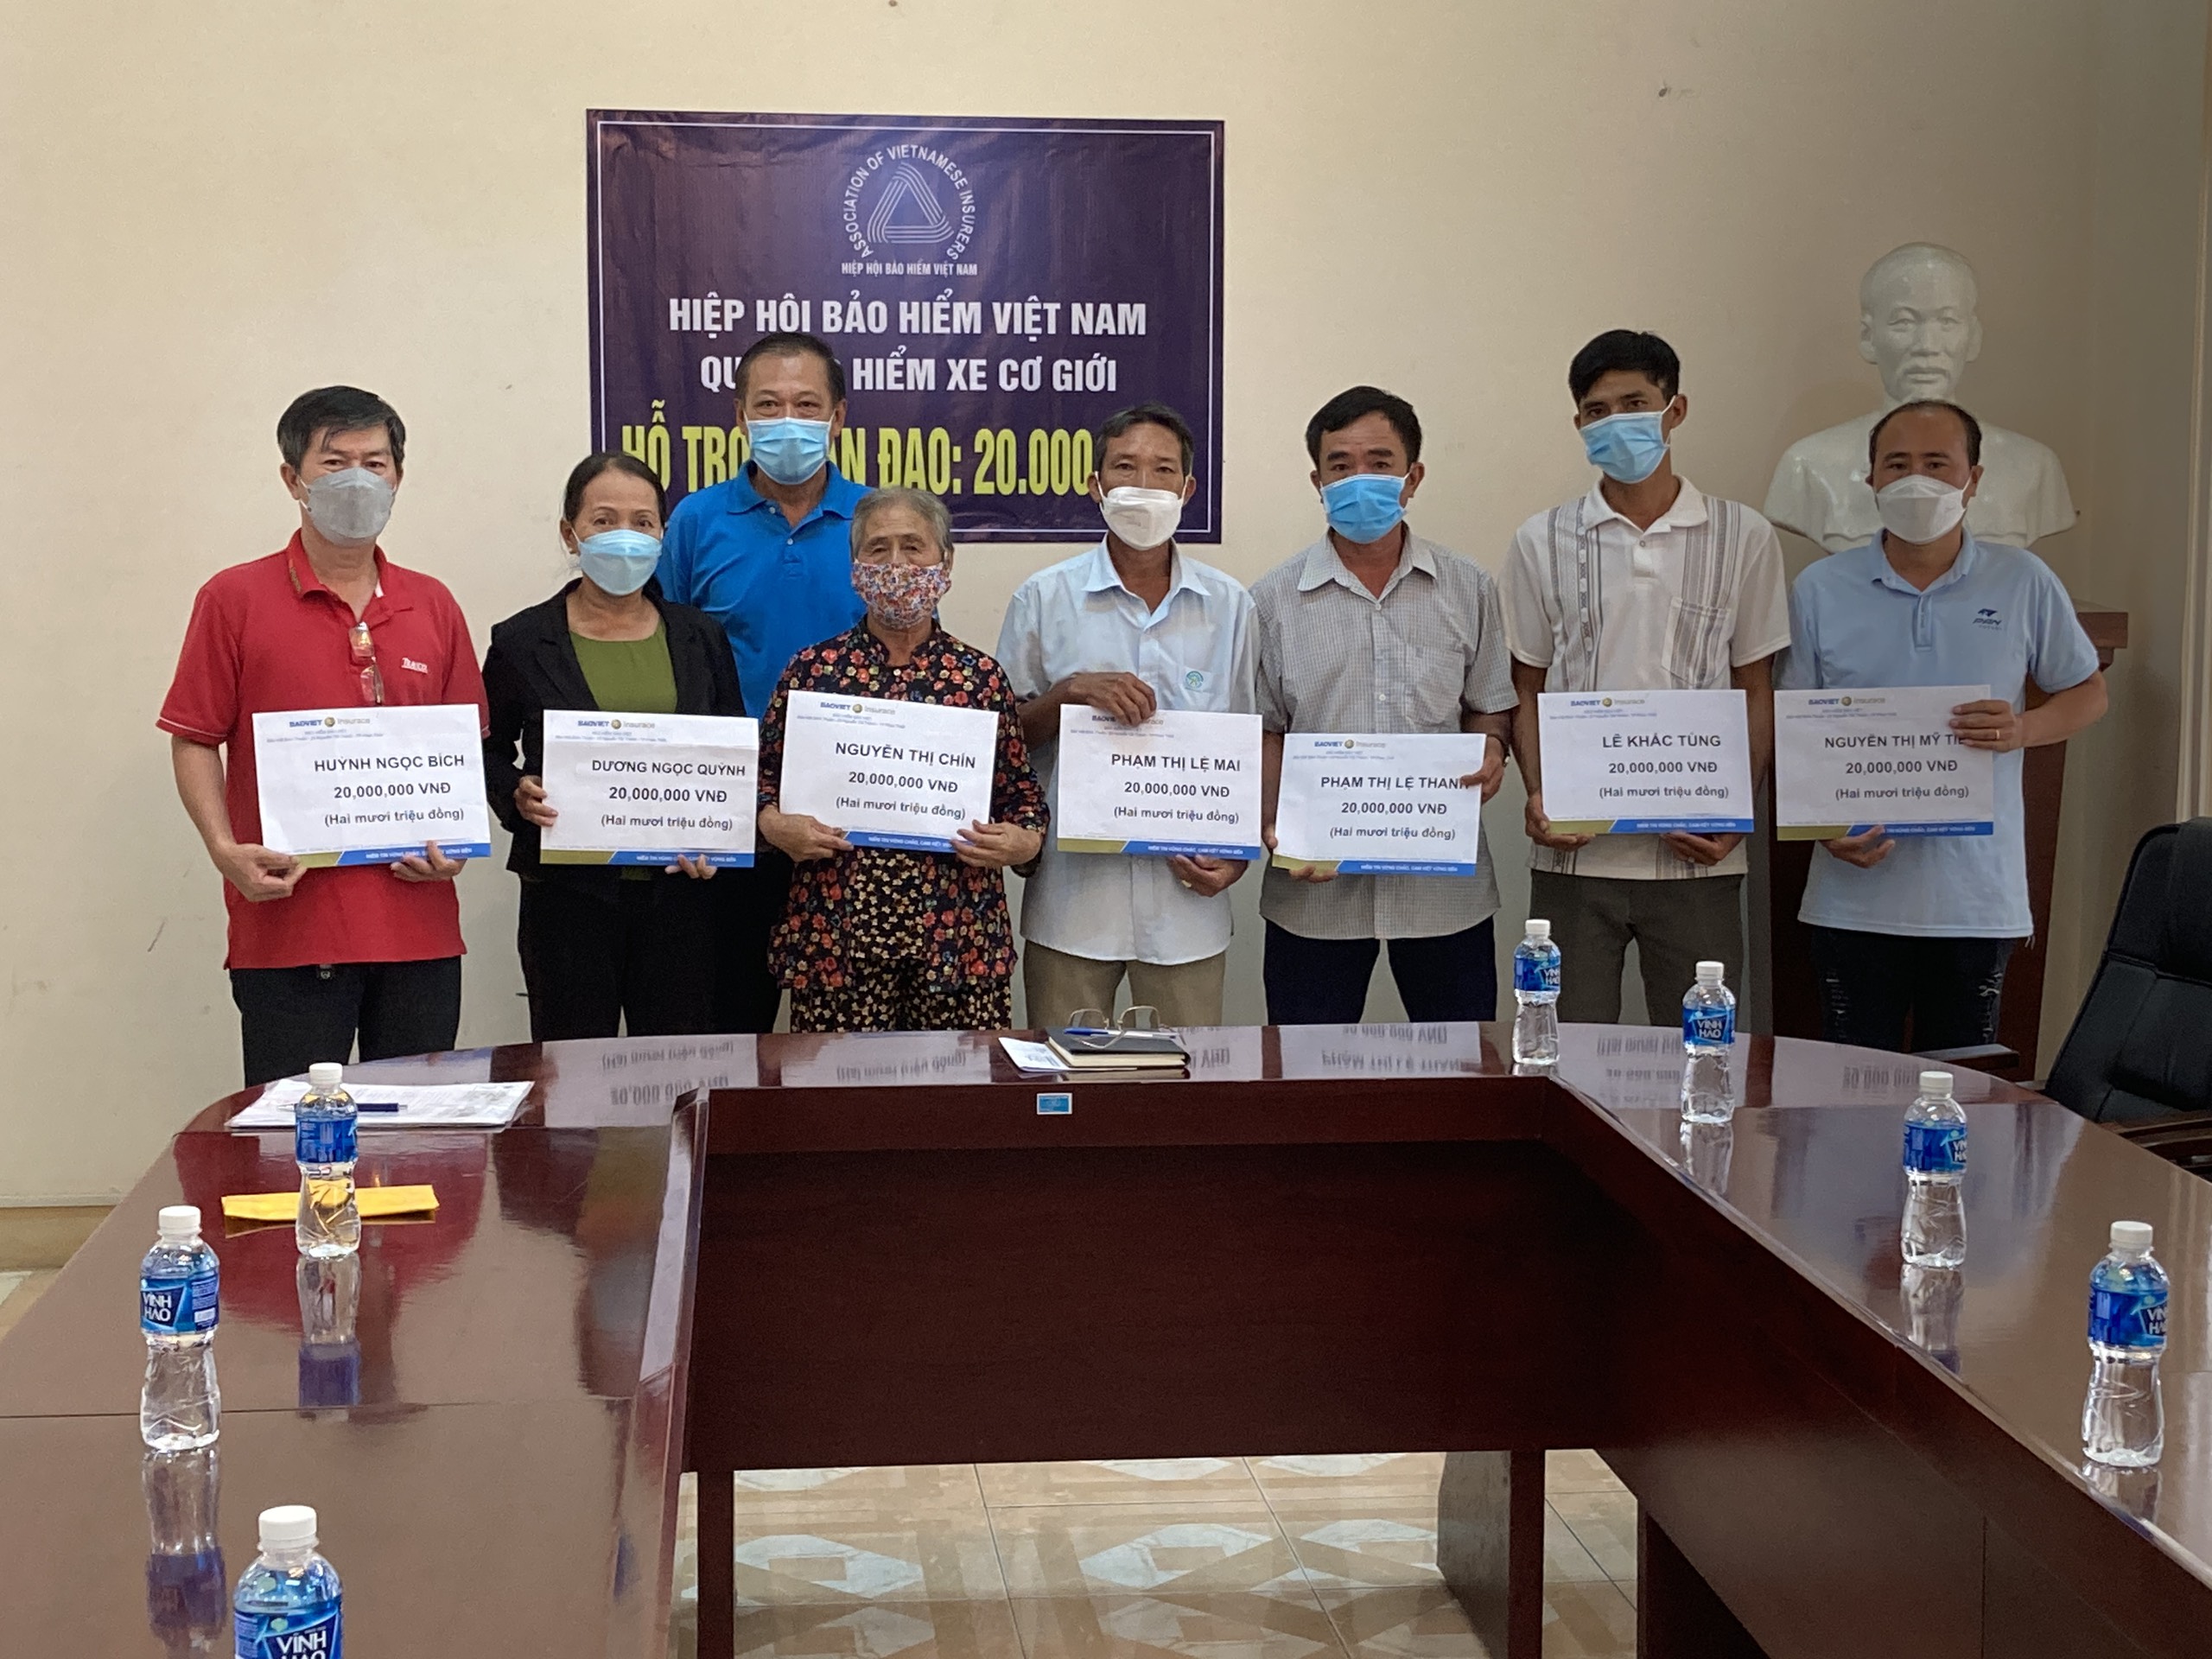 Quỹ Bảo hiểm Xe cơ giới chi hô trợ nhân đạo cho nạn nhân tử vong do tai nạn giao thông tại Bình Thuận